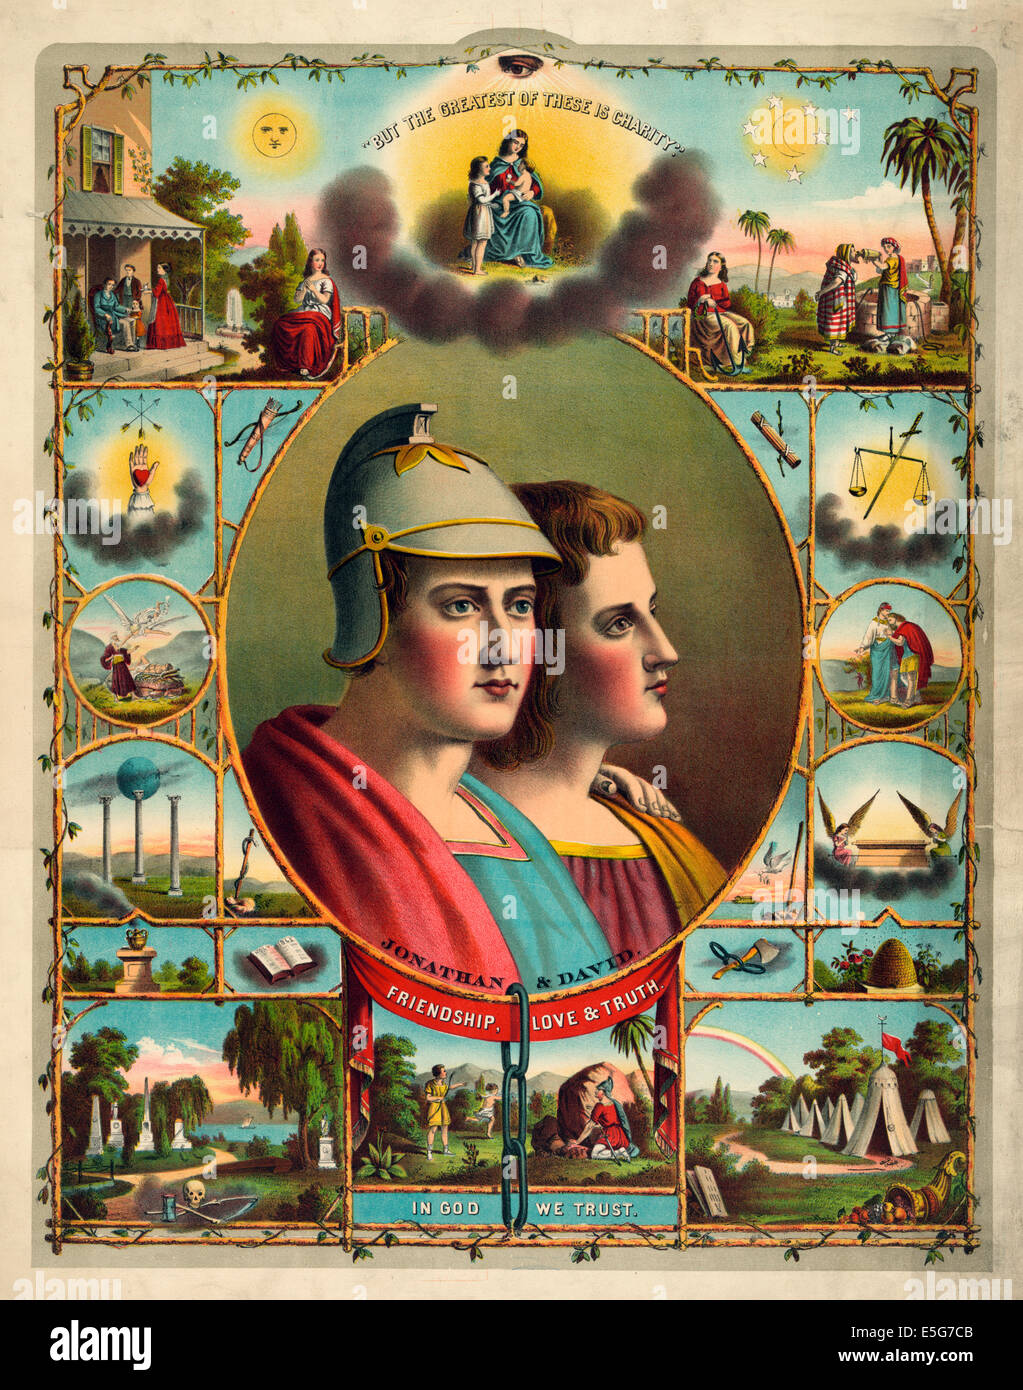 In God we trust - Buste portrait de 'Jonathan & David' dans un ovale entouré par des religieux et des scènes et des symboles maçonniques. 1883 Banque D'Images